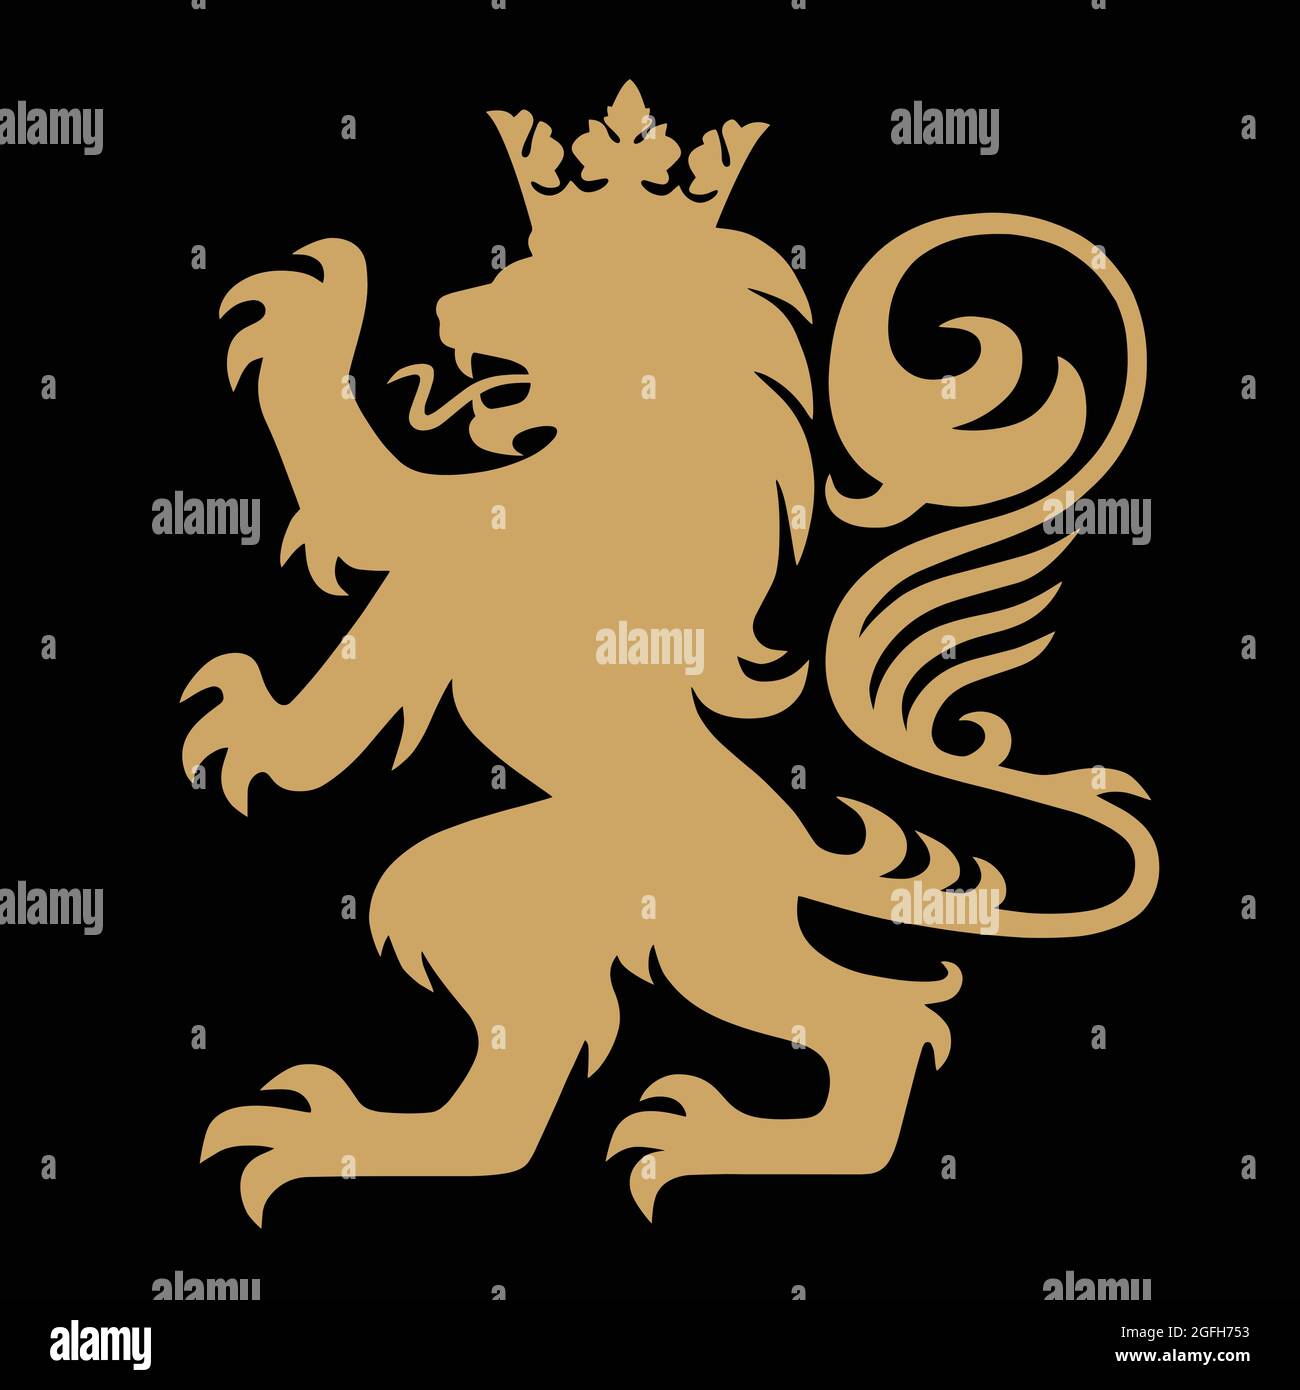 Лев символ герба. Герб со львом. Геральдический Лев с короной. Геральдический Лев на щите. Герб со львом и короной.